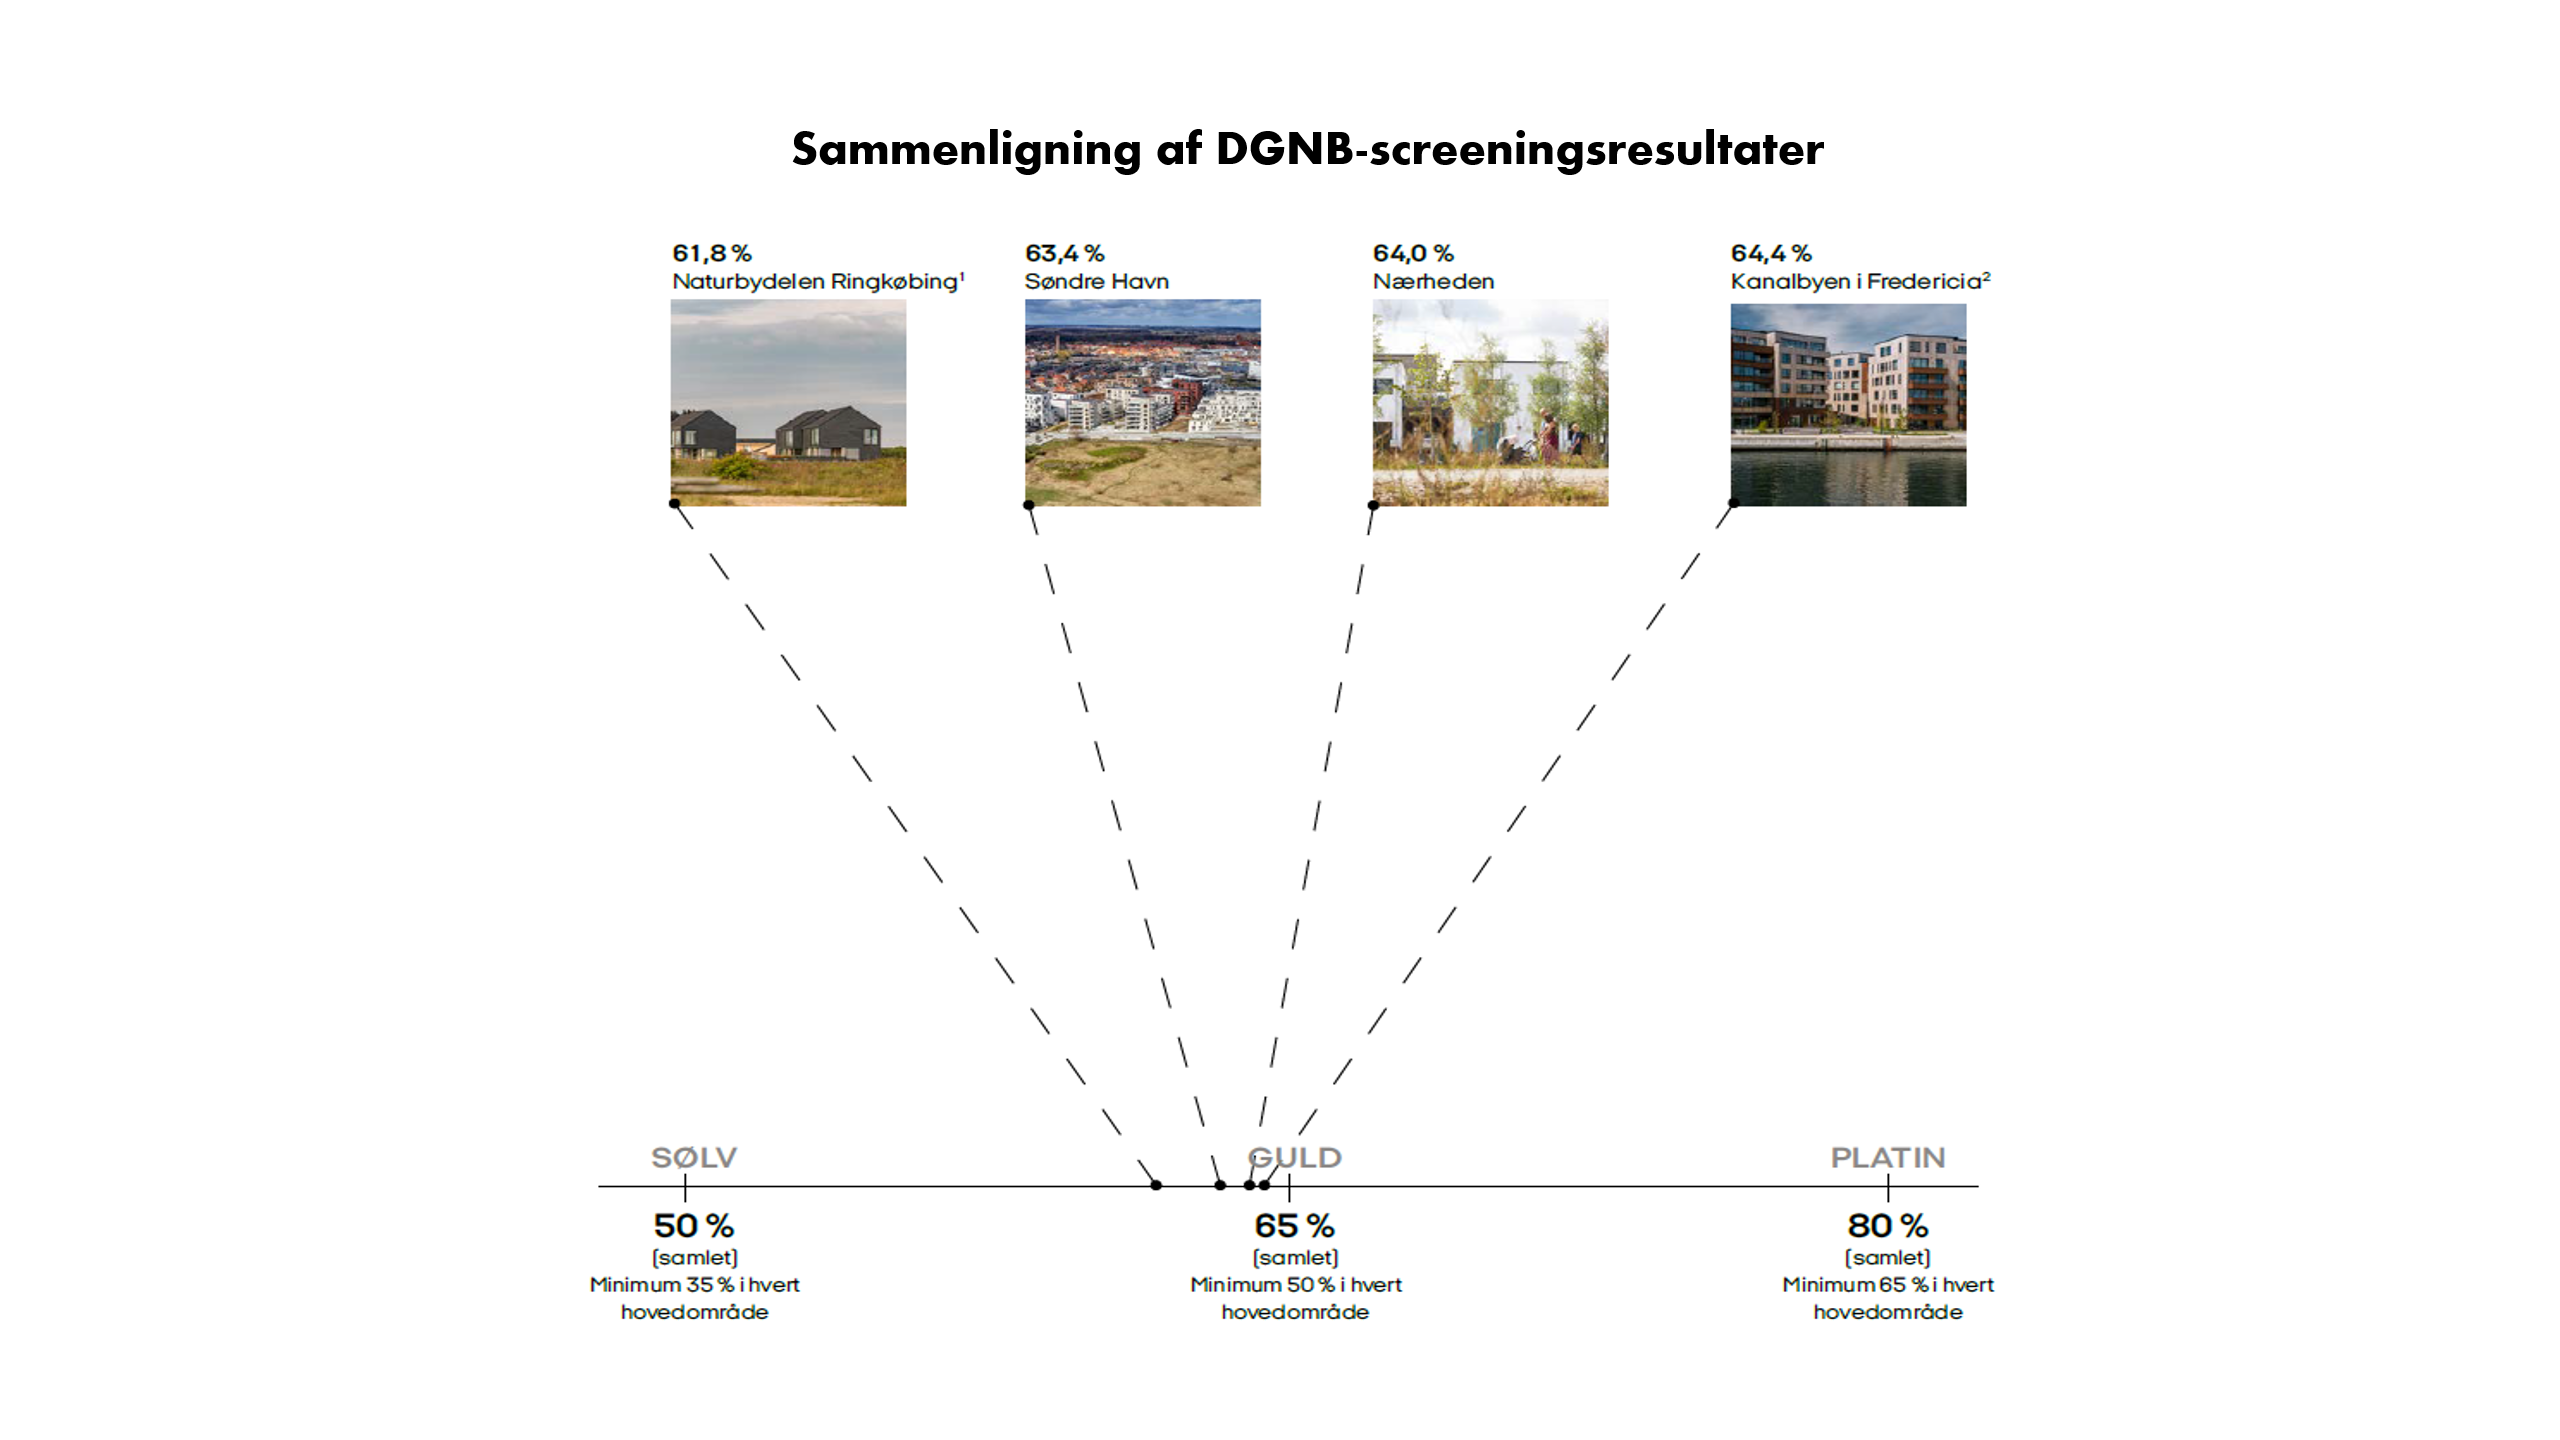 De fire arealudviklingsprojekter scorer samlet set næsten ens i DGNB-screeningerne og har klare fællestræk i blandt andet organisering, proces og visioner, men der er alligevel store forskelle i deres bæredygtighedsprofiler..